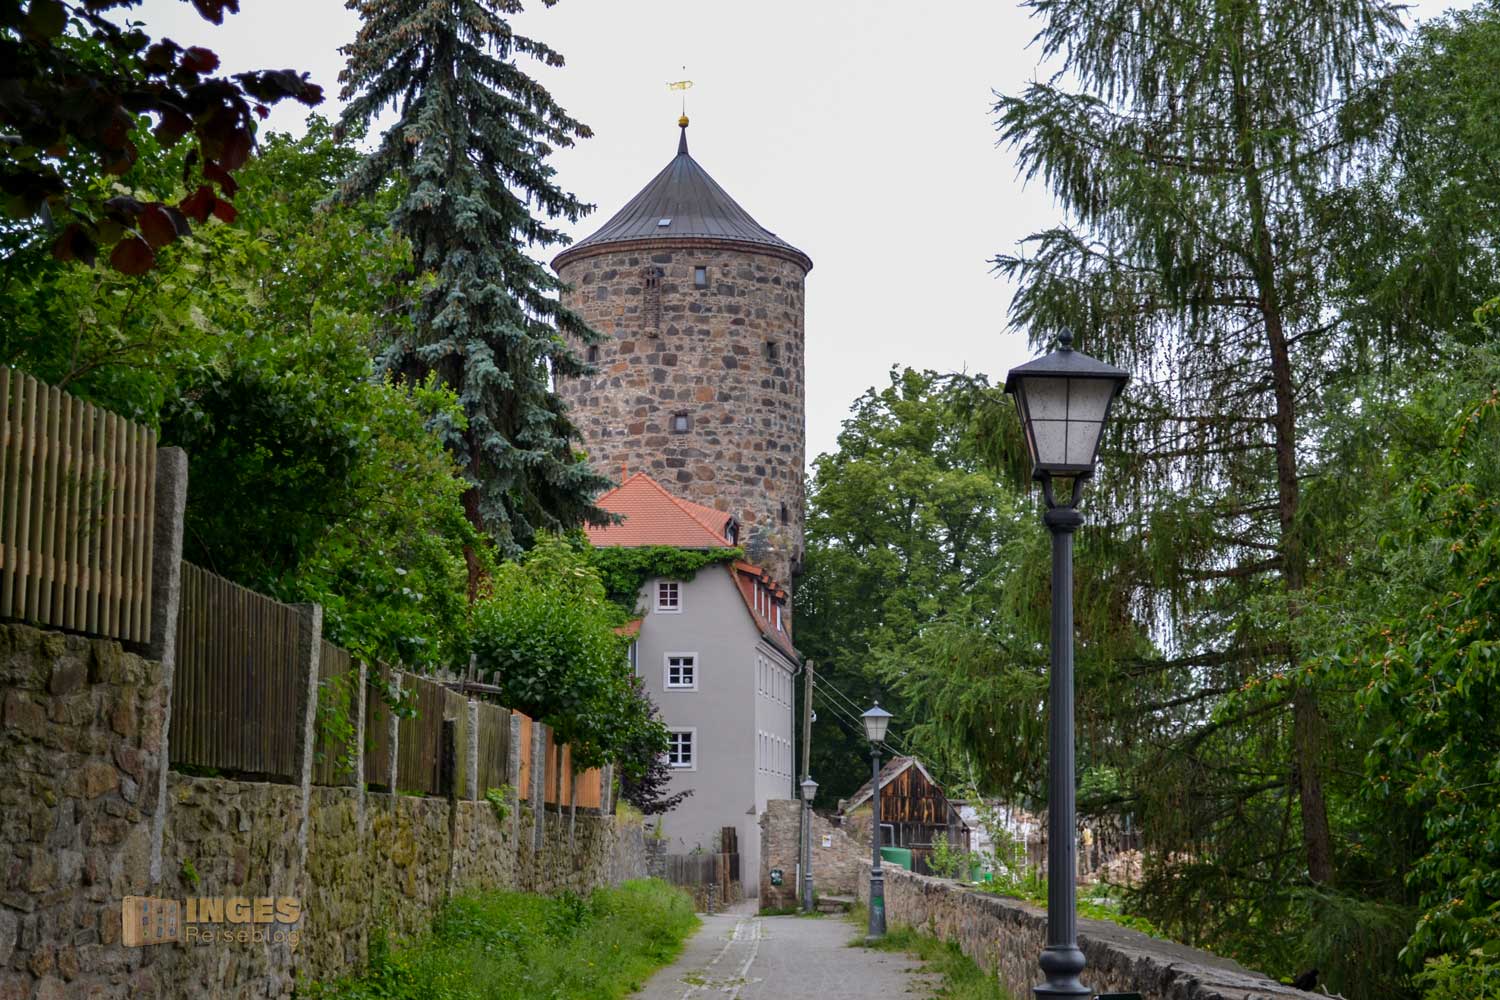 Gerberbastei in Bautzen